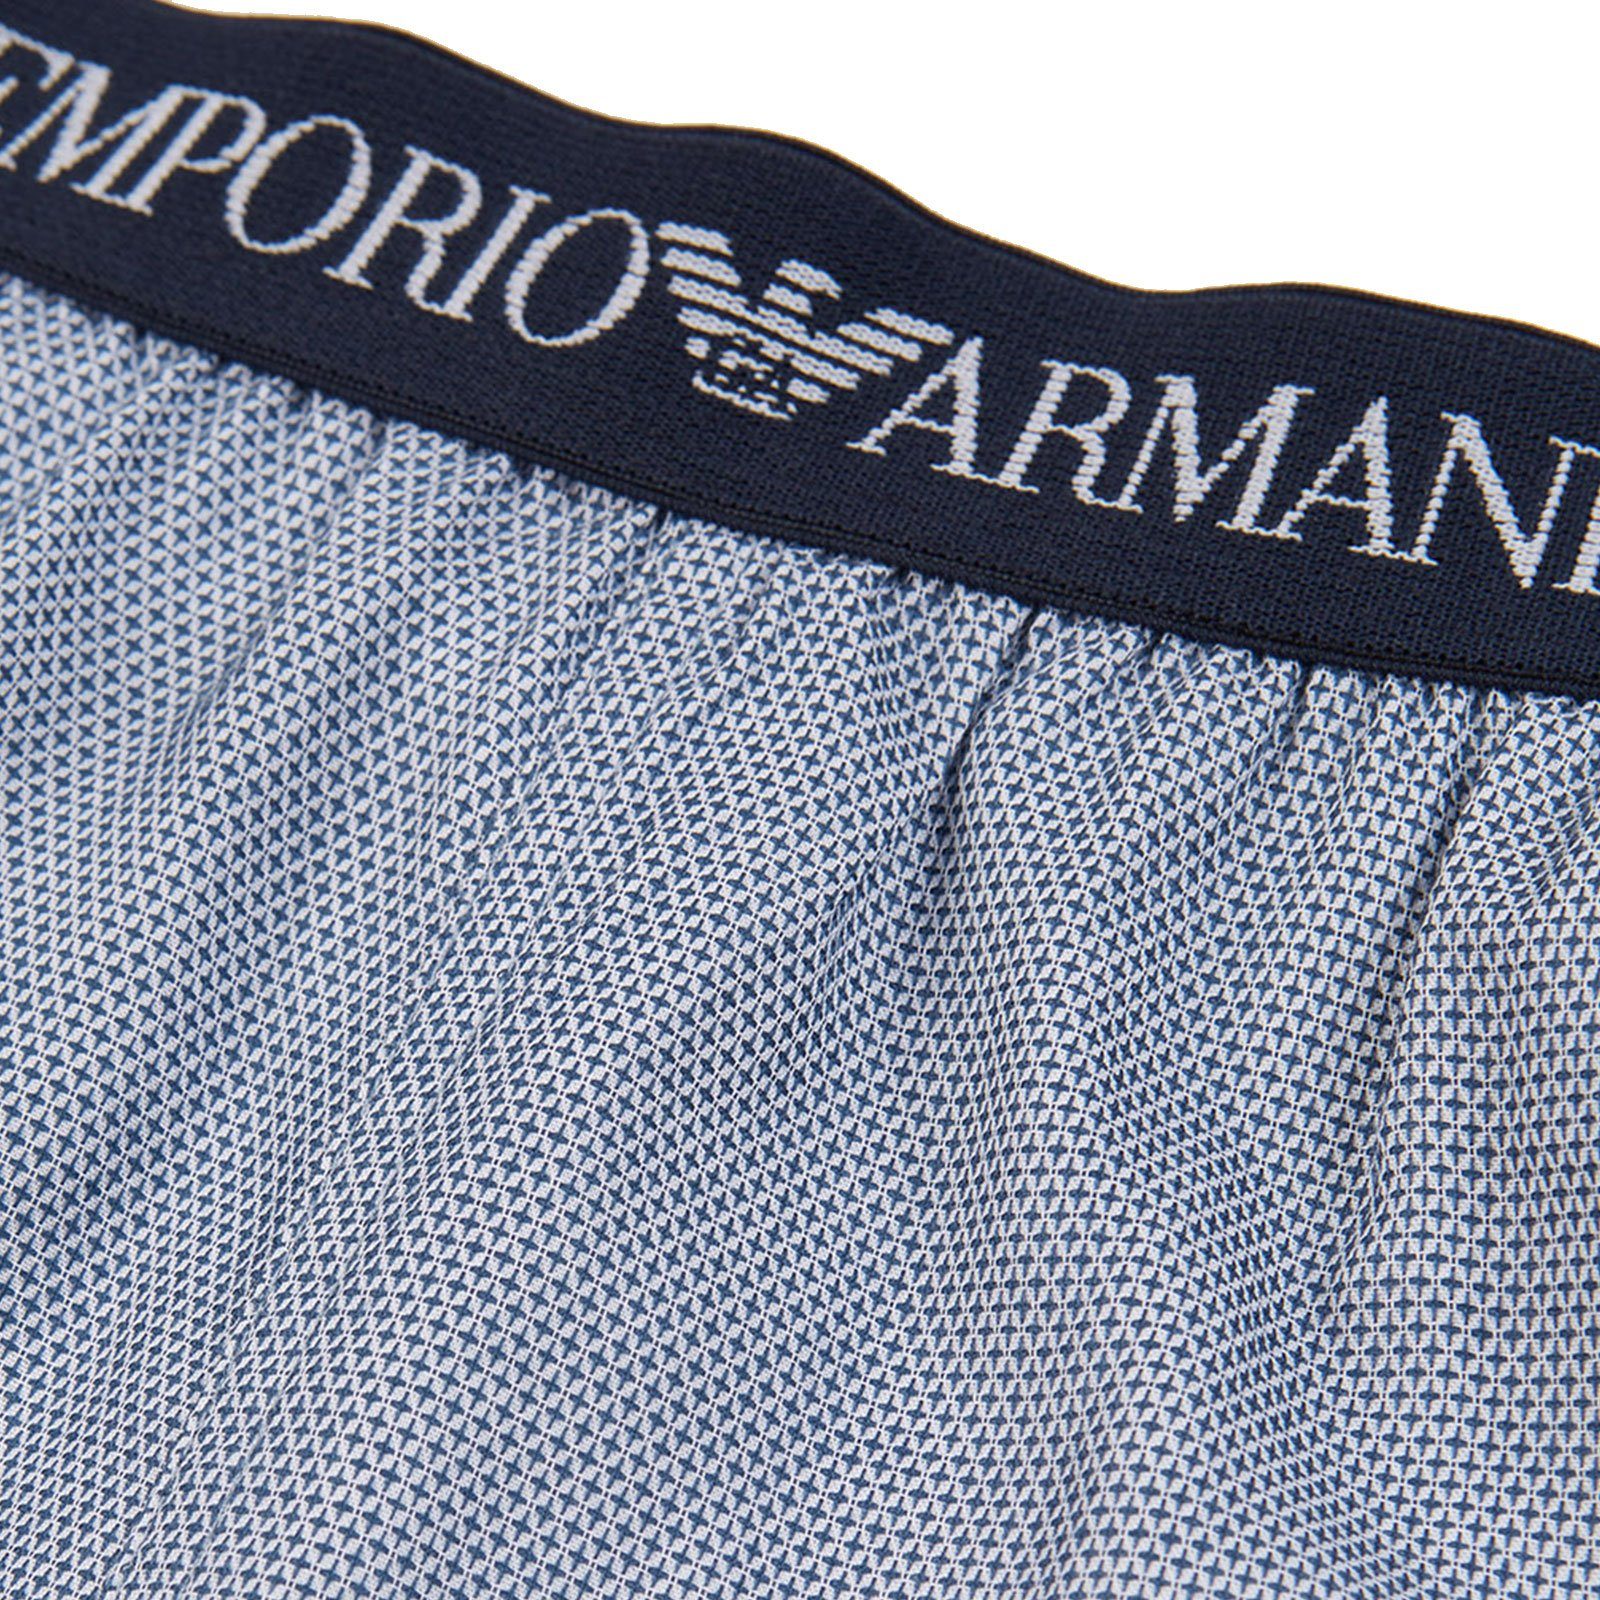 Emporio rhombus Markenschriftzug navy/white Armani 111205-76610 mit Loungewear Jacquard-Muster Pyjamashorts und umlaufendem Schlafhose